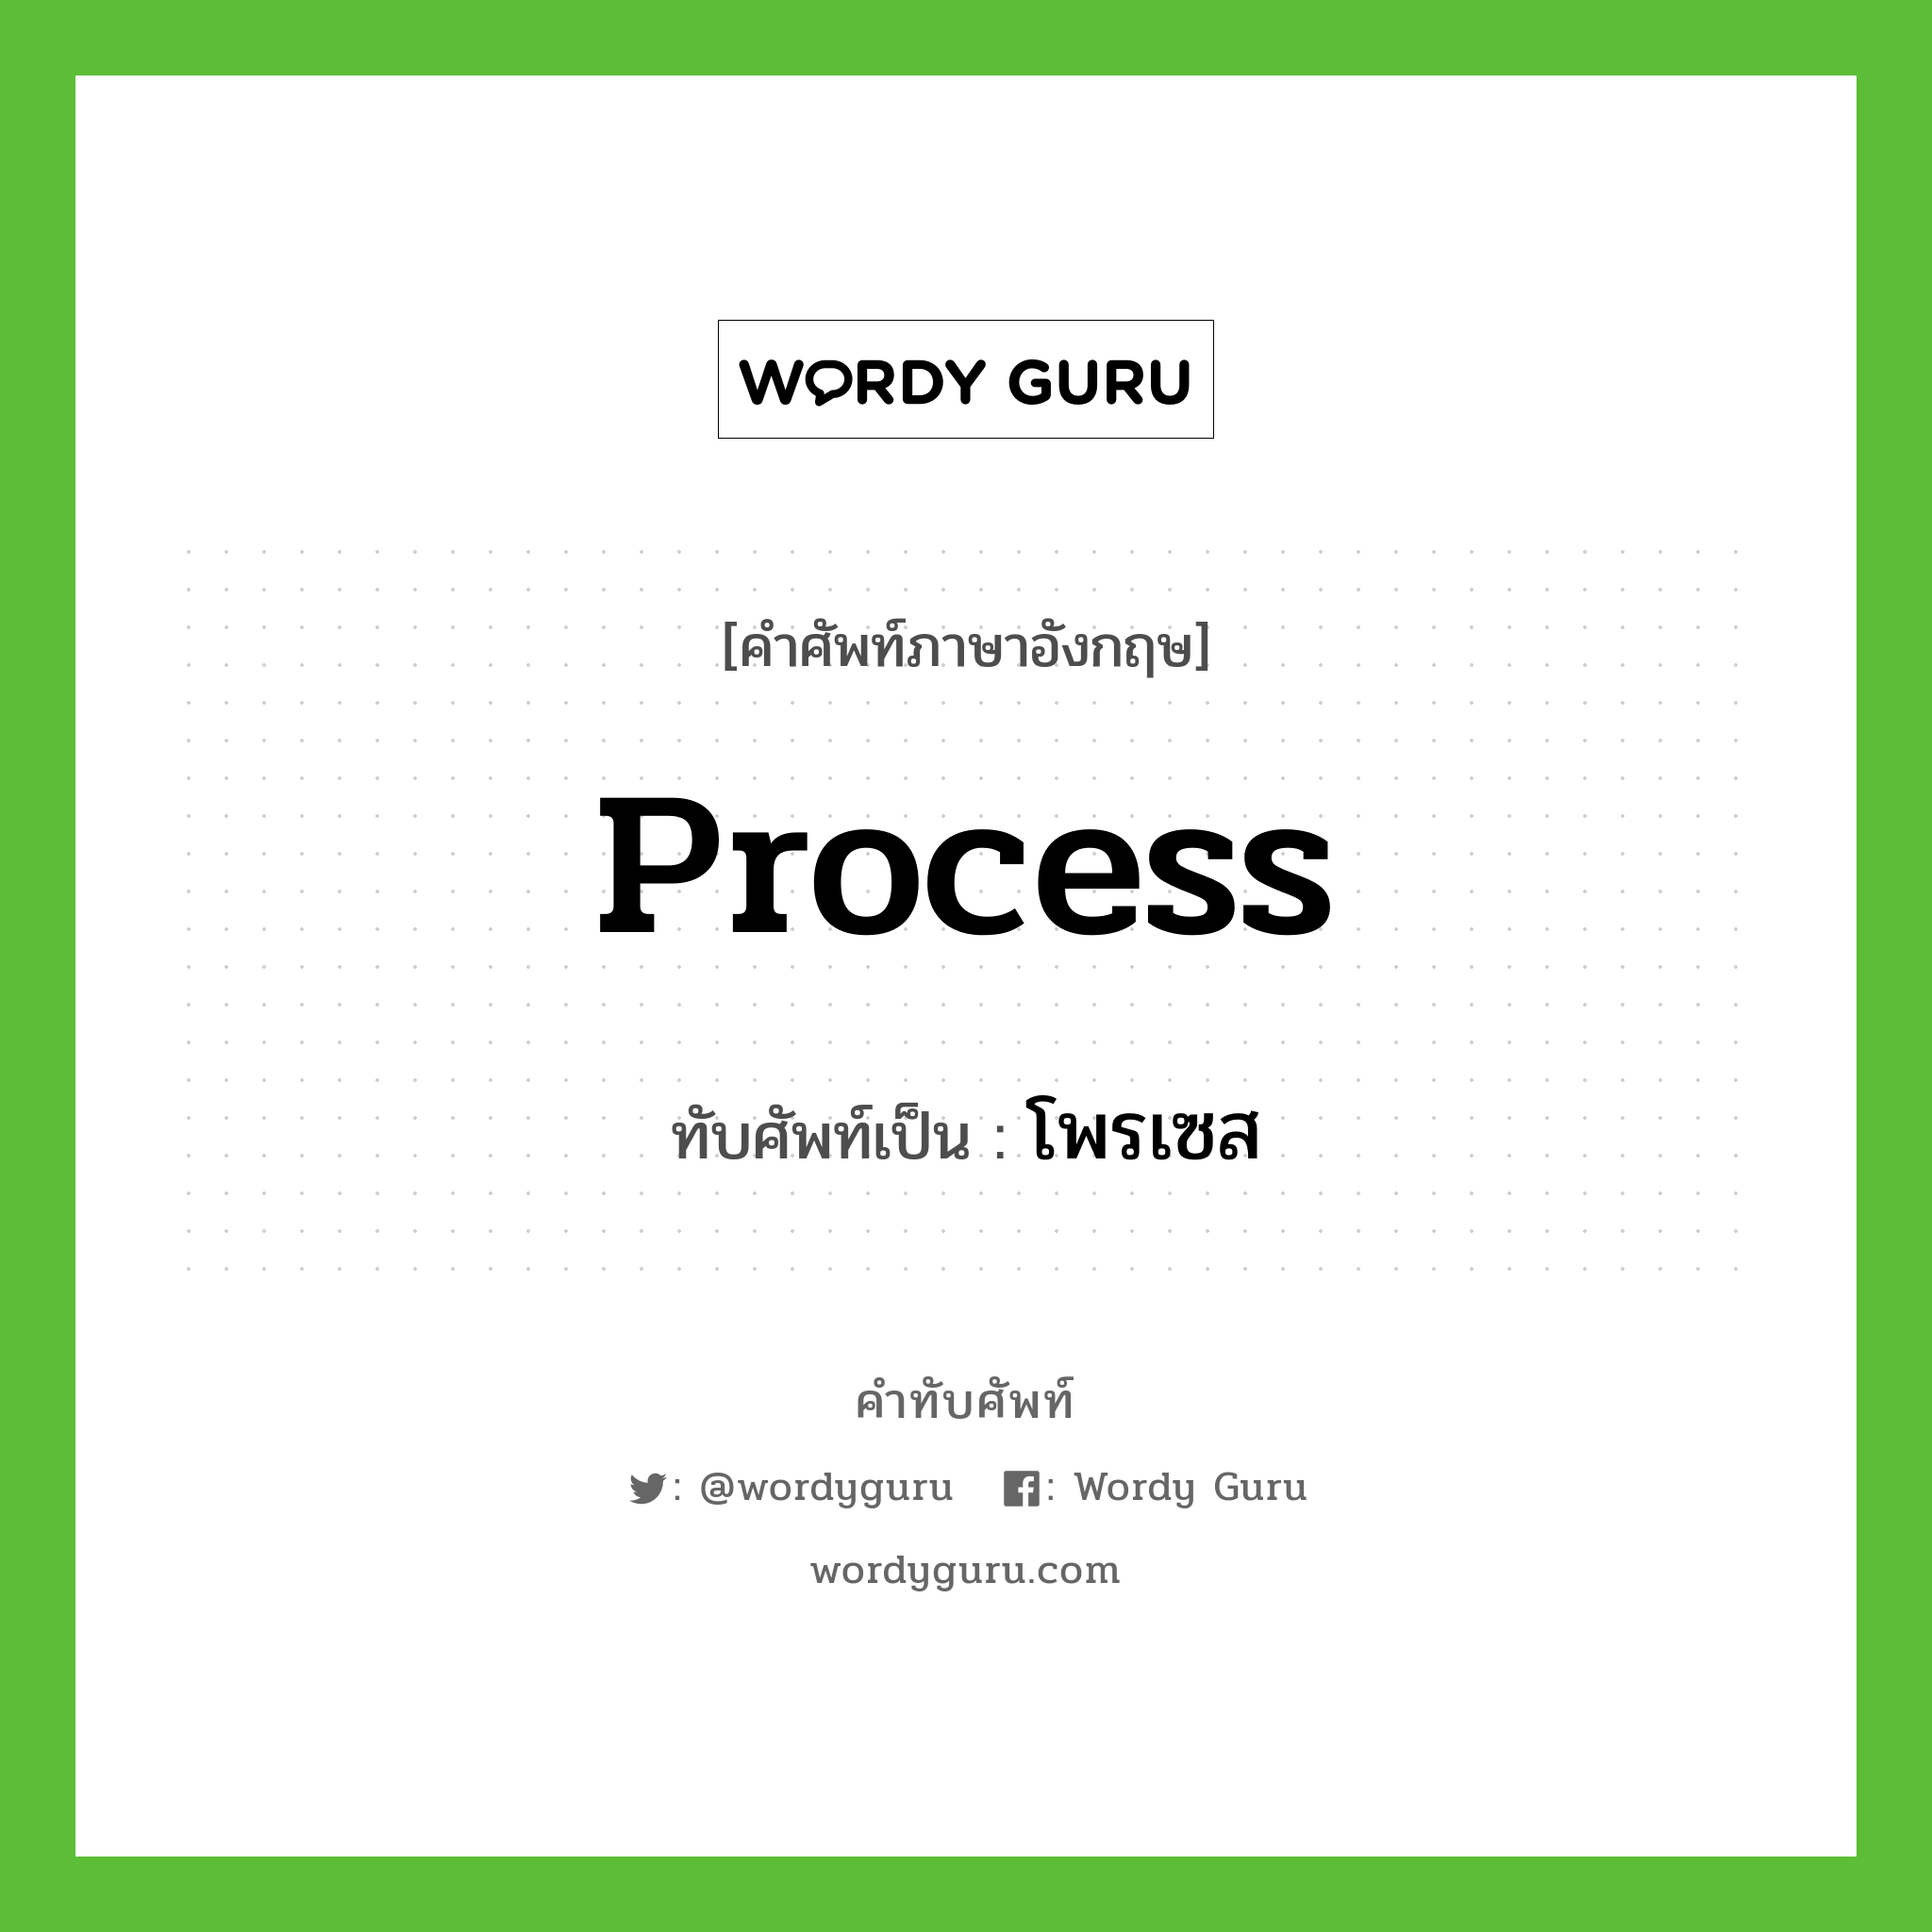 process เขียนเป็นคำไทยว่าอะไร?, คำศัพท์ภาษาอังกฤษ process ทับศัพท์เป็น โพรเซส